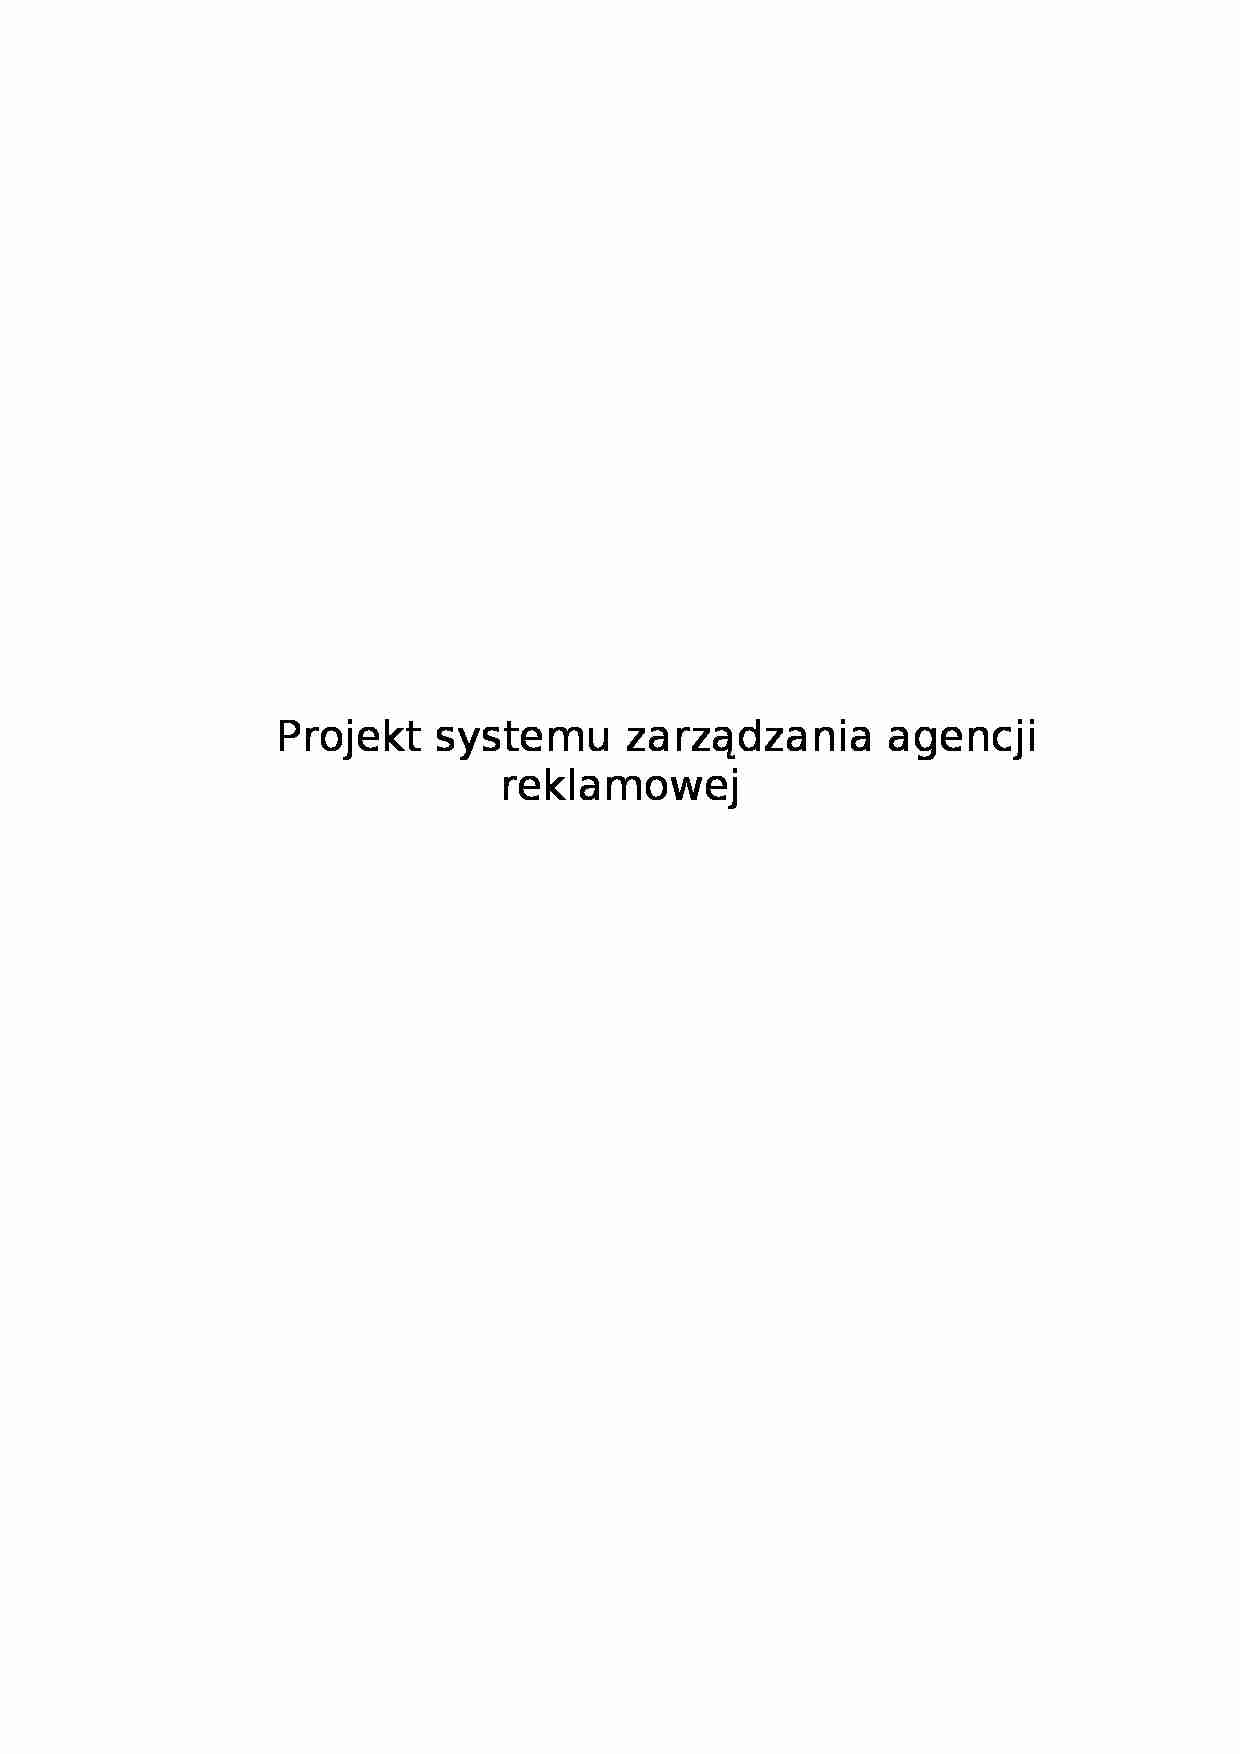 Projekt systemu zarządzania agencji reklamowej Rekland - strona 1